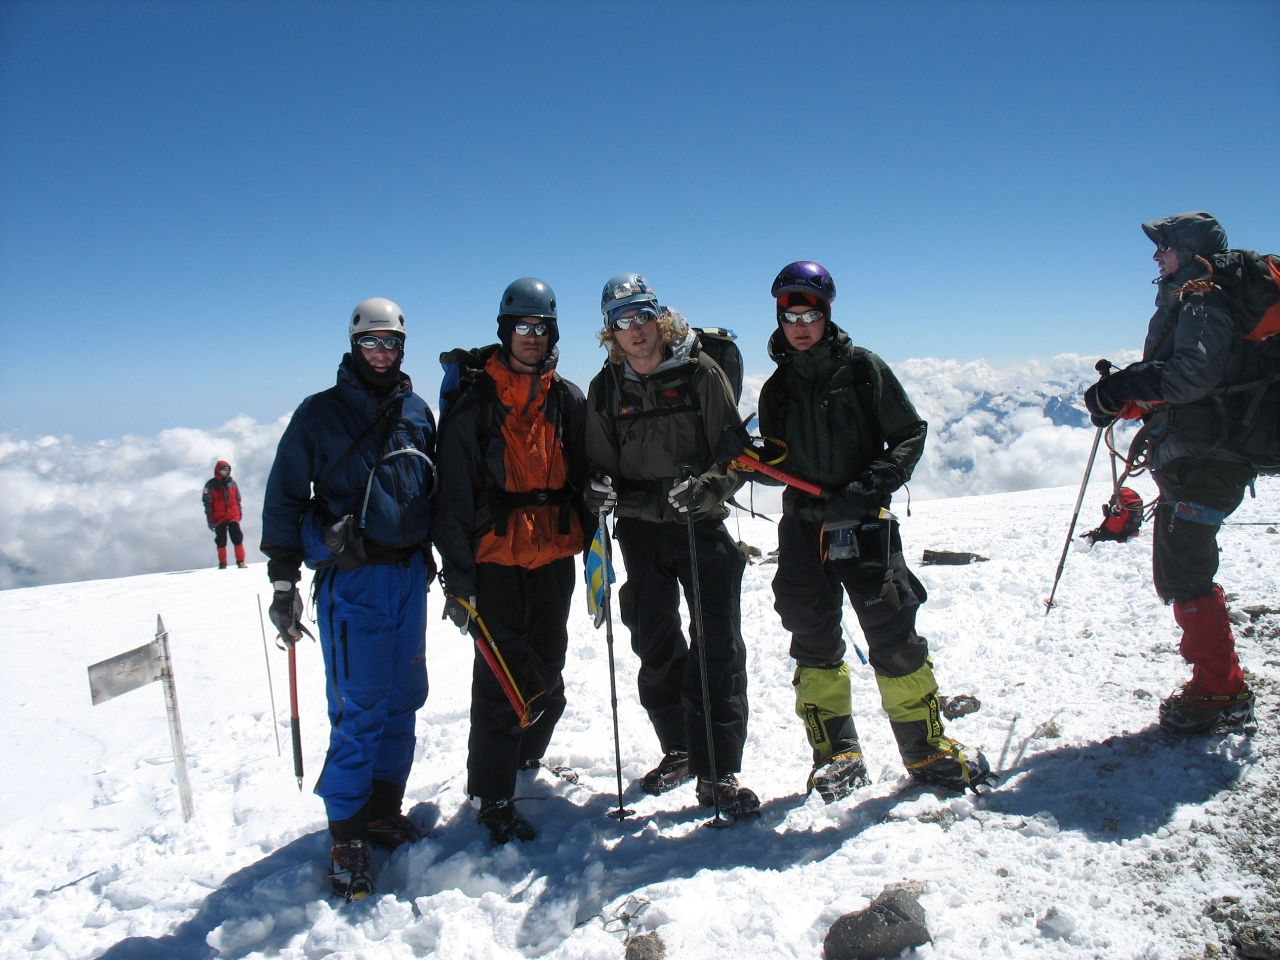 Team Lajt on the summit of Elbrus